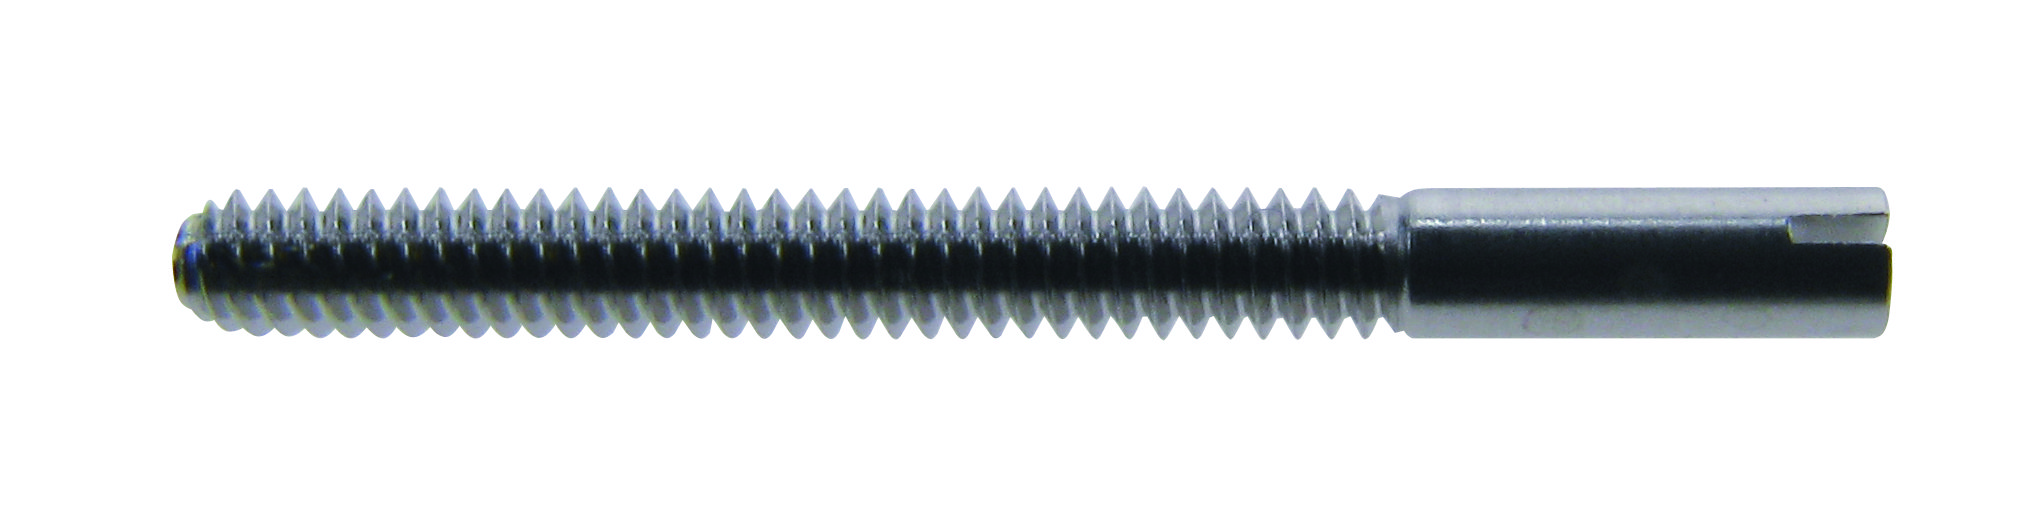 Bandschroef Roestvrij staal, lengte 15,00mm Ø 1,20mm, inhoud 5 stk.